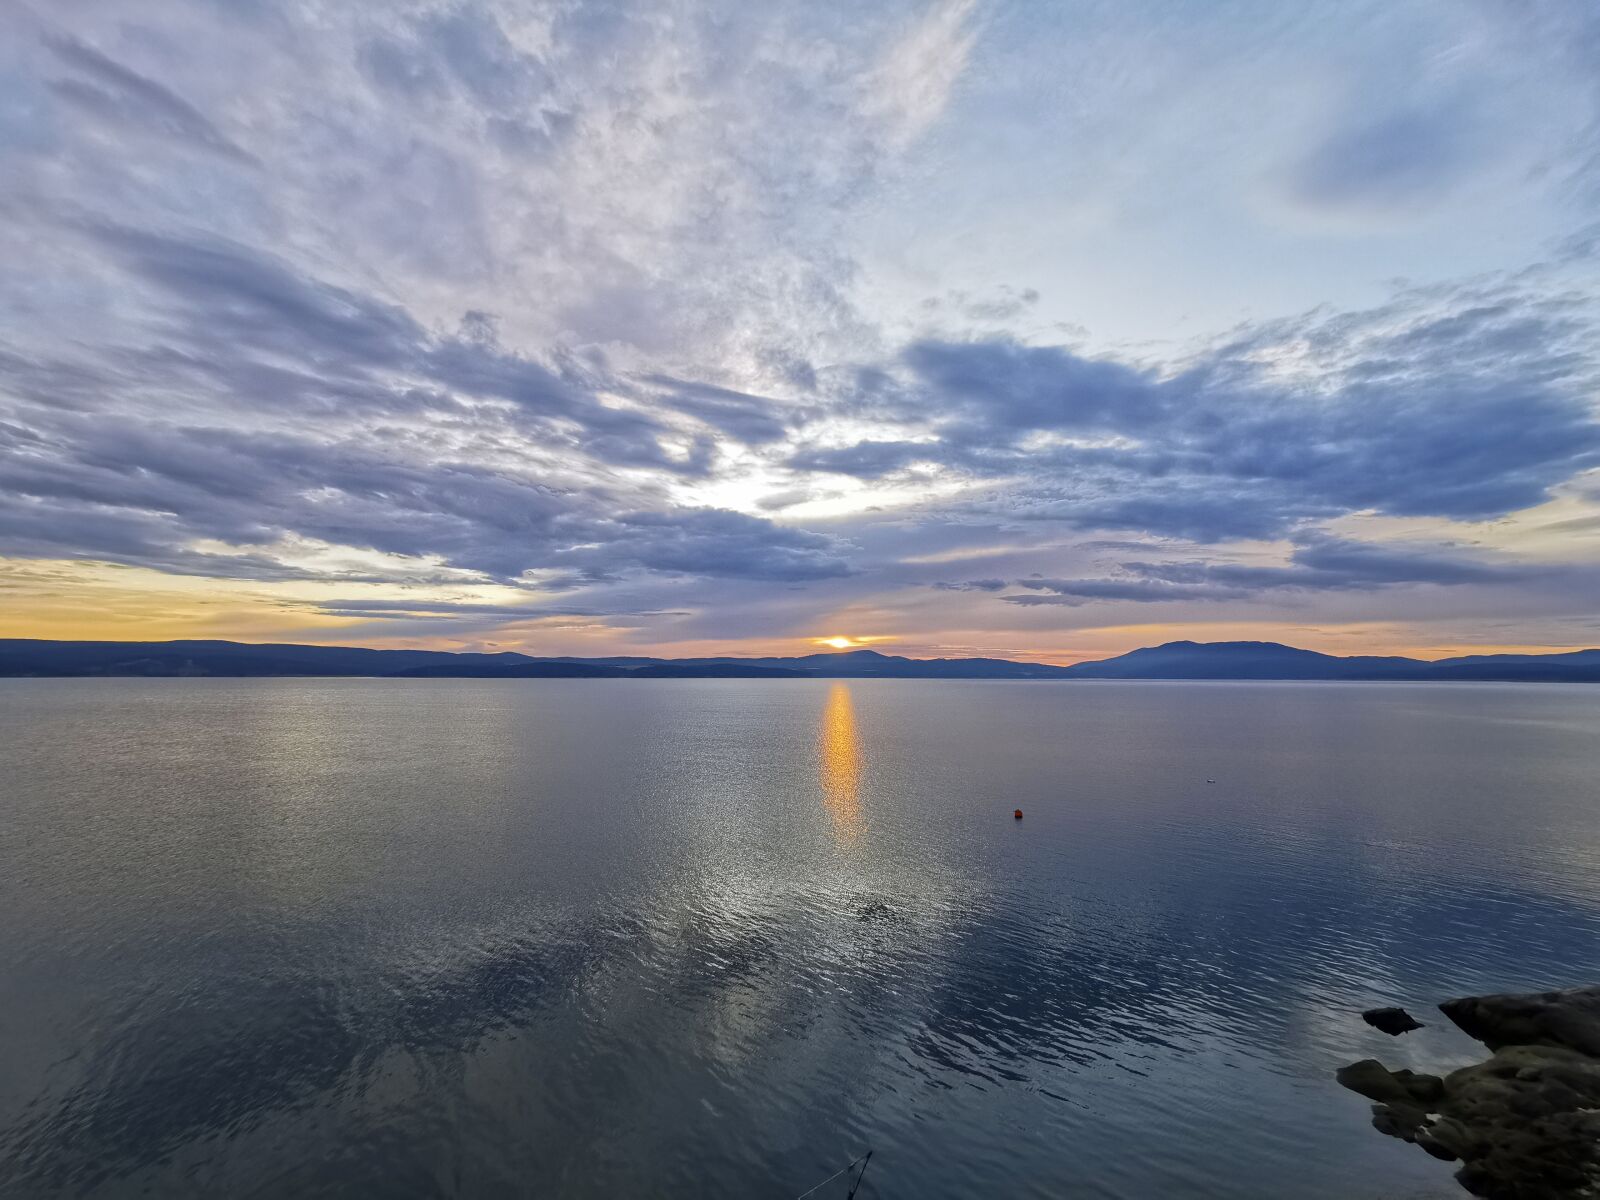 HUAWEI P30 Pro sample photo. Sunrise, lake, landscape photography